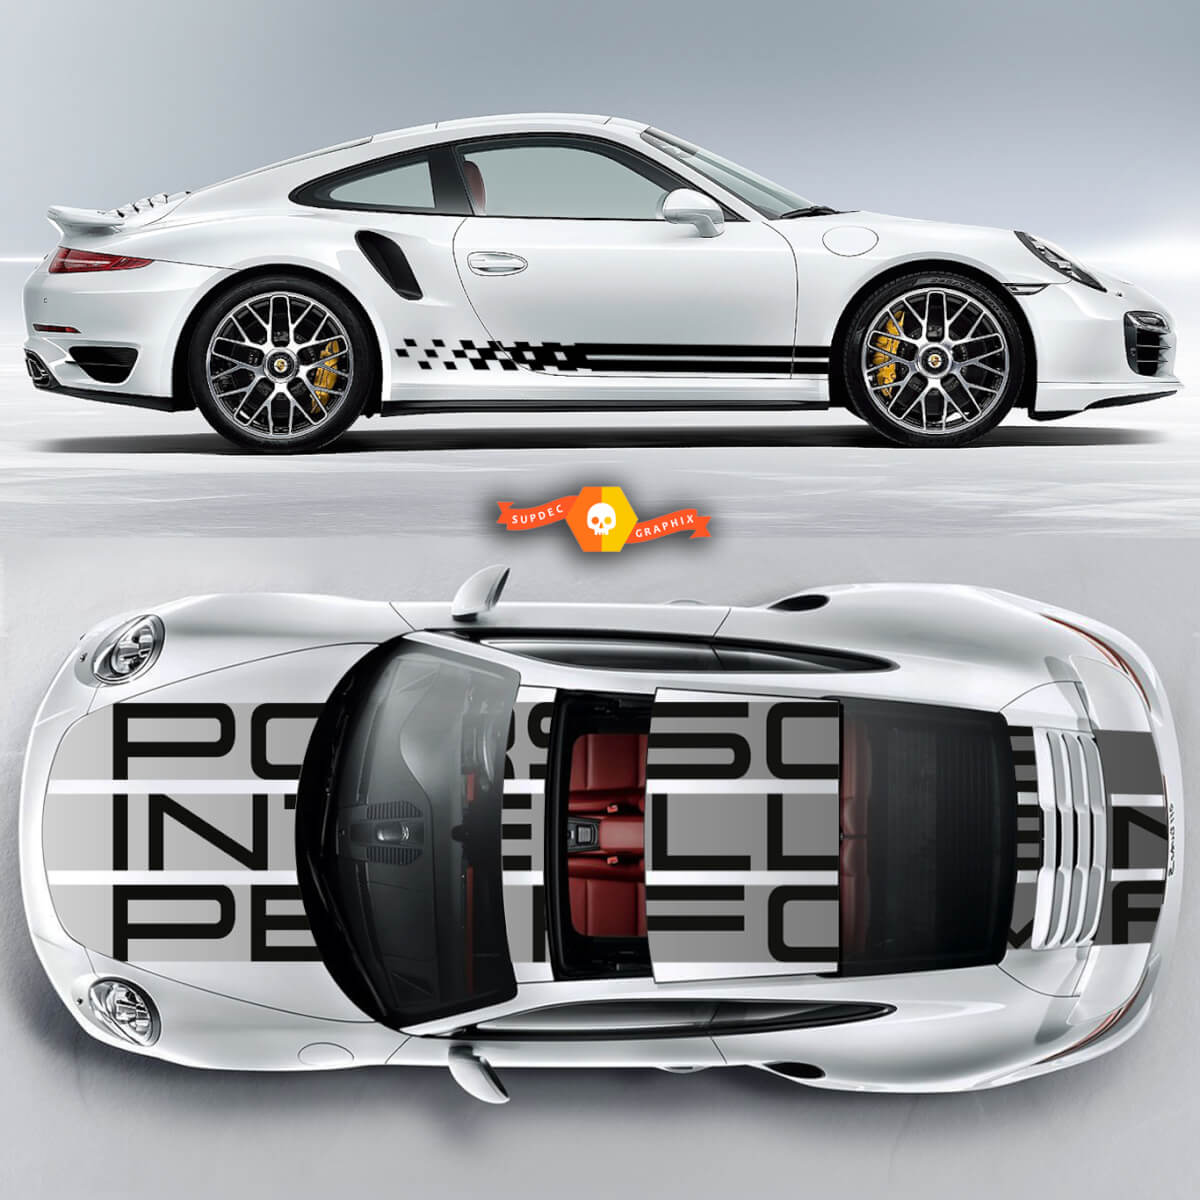 Incredibile Porsche Carrera 911 Endurance Racing Edition Stripes o qualsiasi Porsche